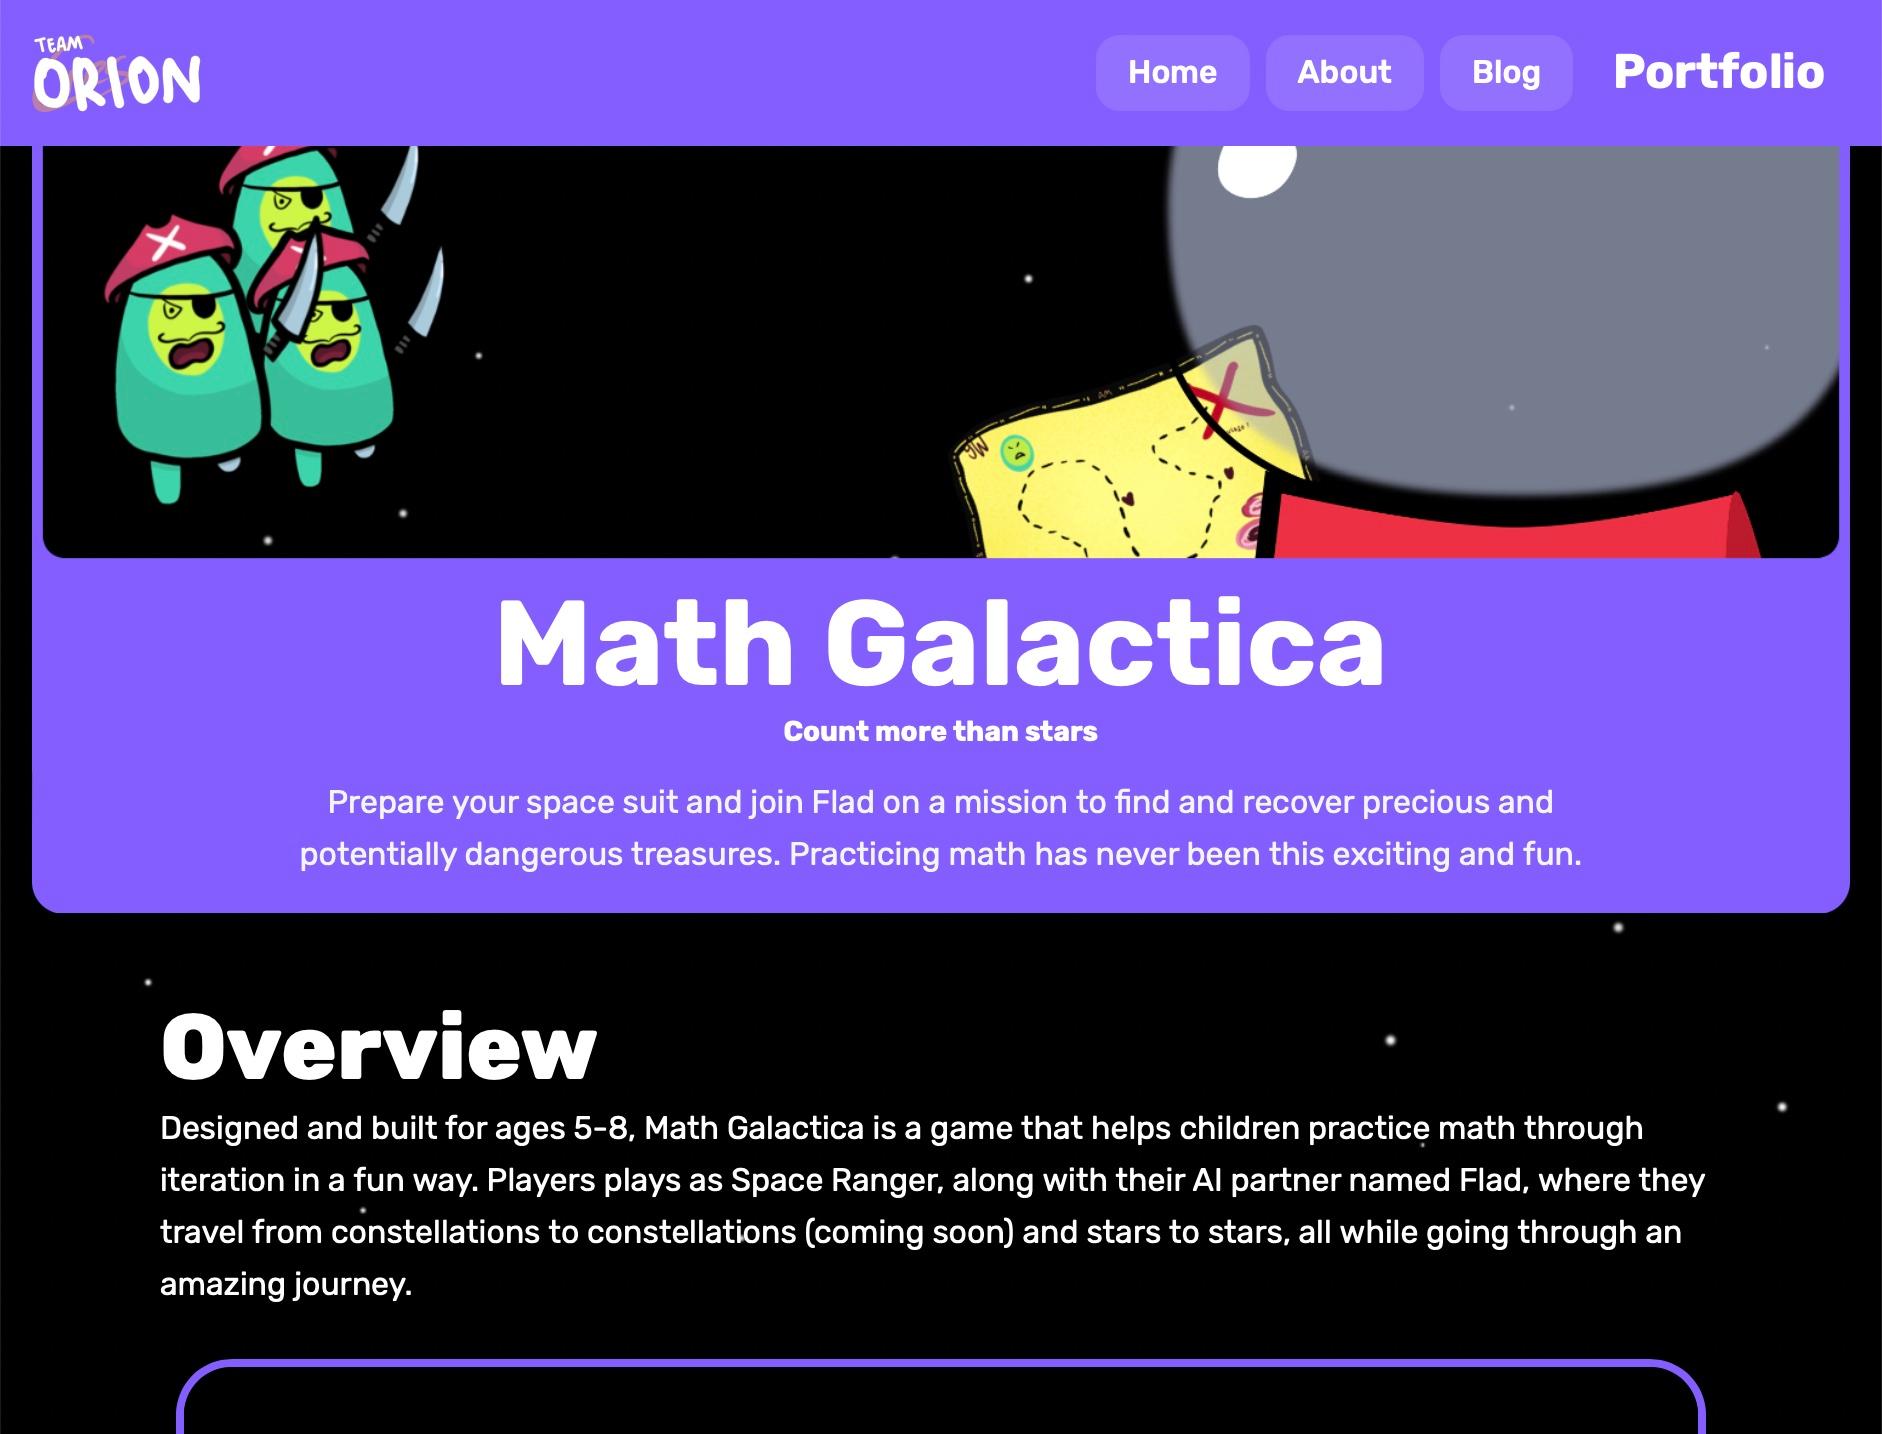 math galactica's portfolio image